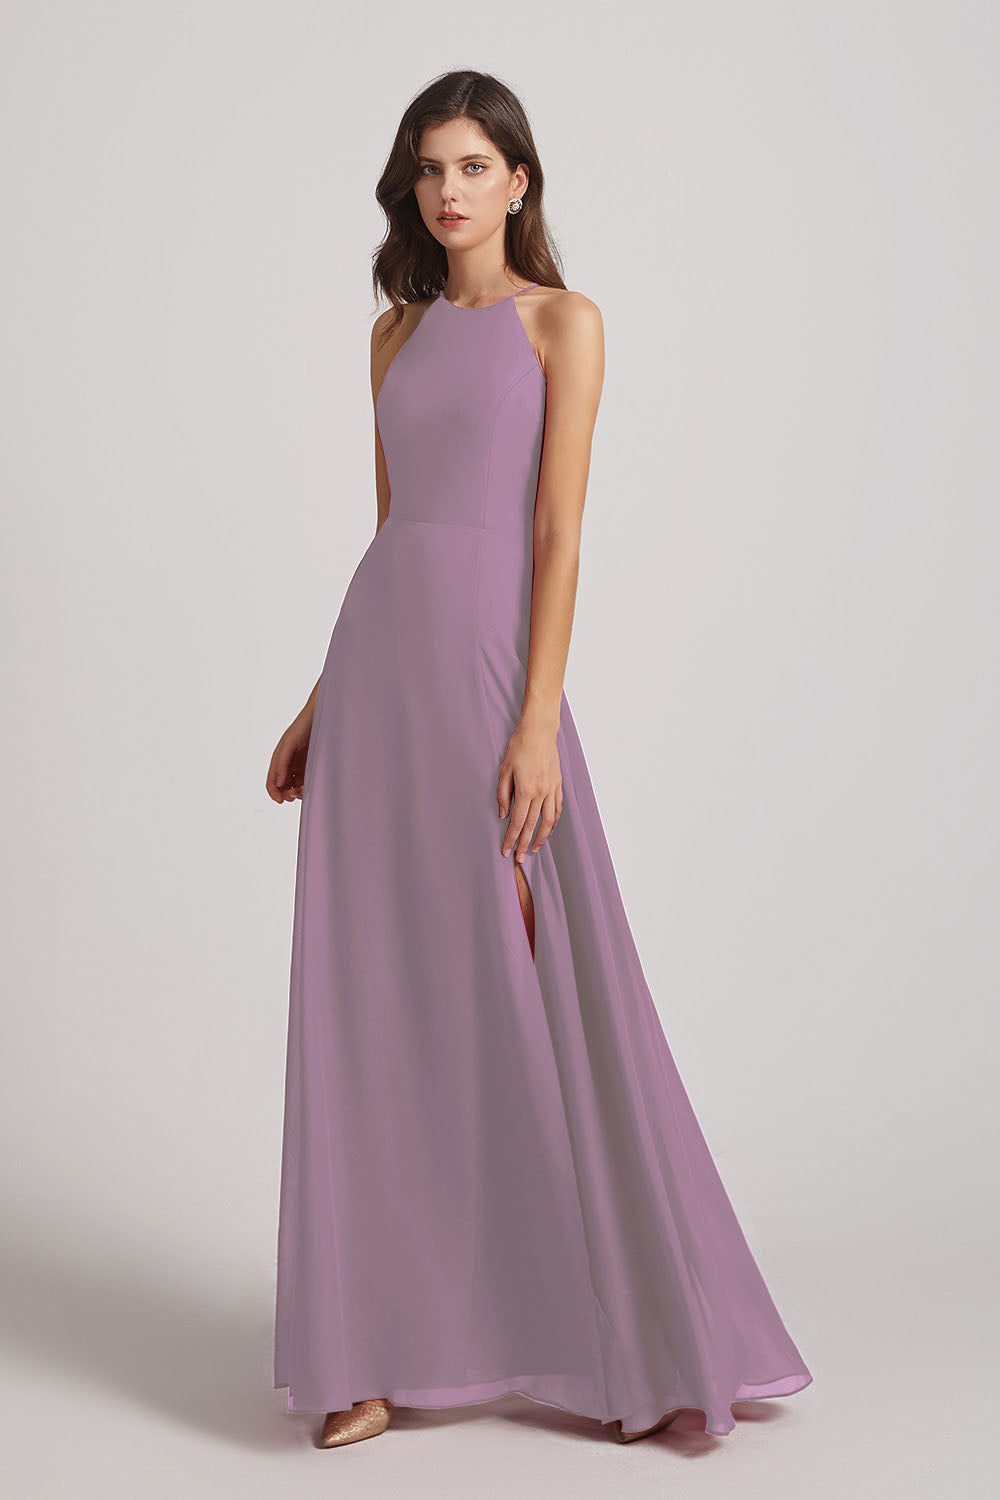 Alfa Bridal Dark Lavender Halter Chiffon Maxi Dresses with Side Slit (AF0102)